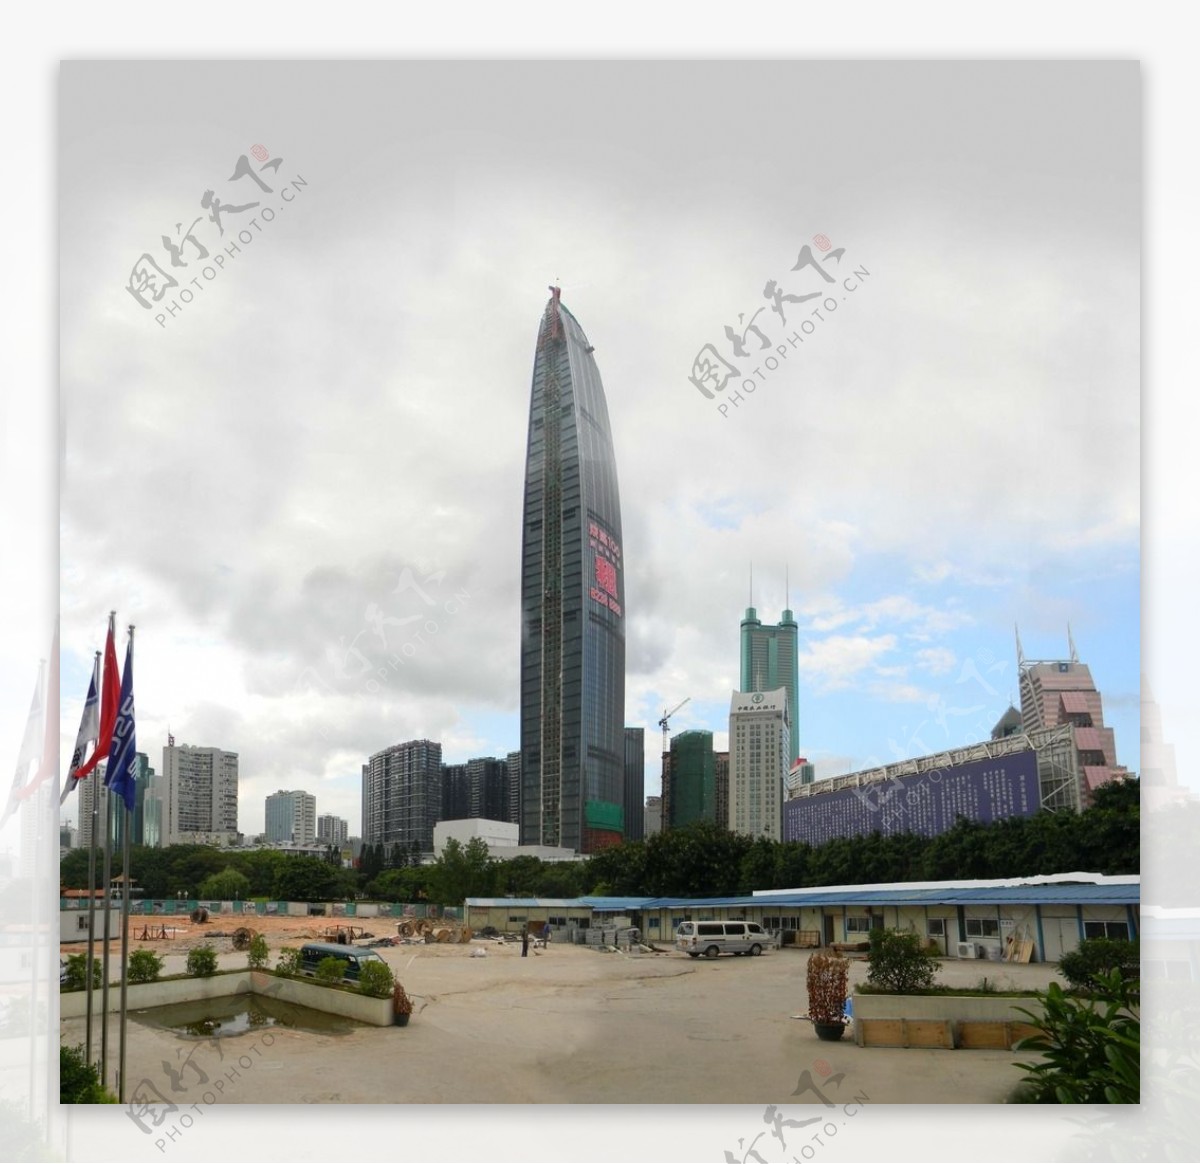 深圳第一高楼京基100大厦